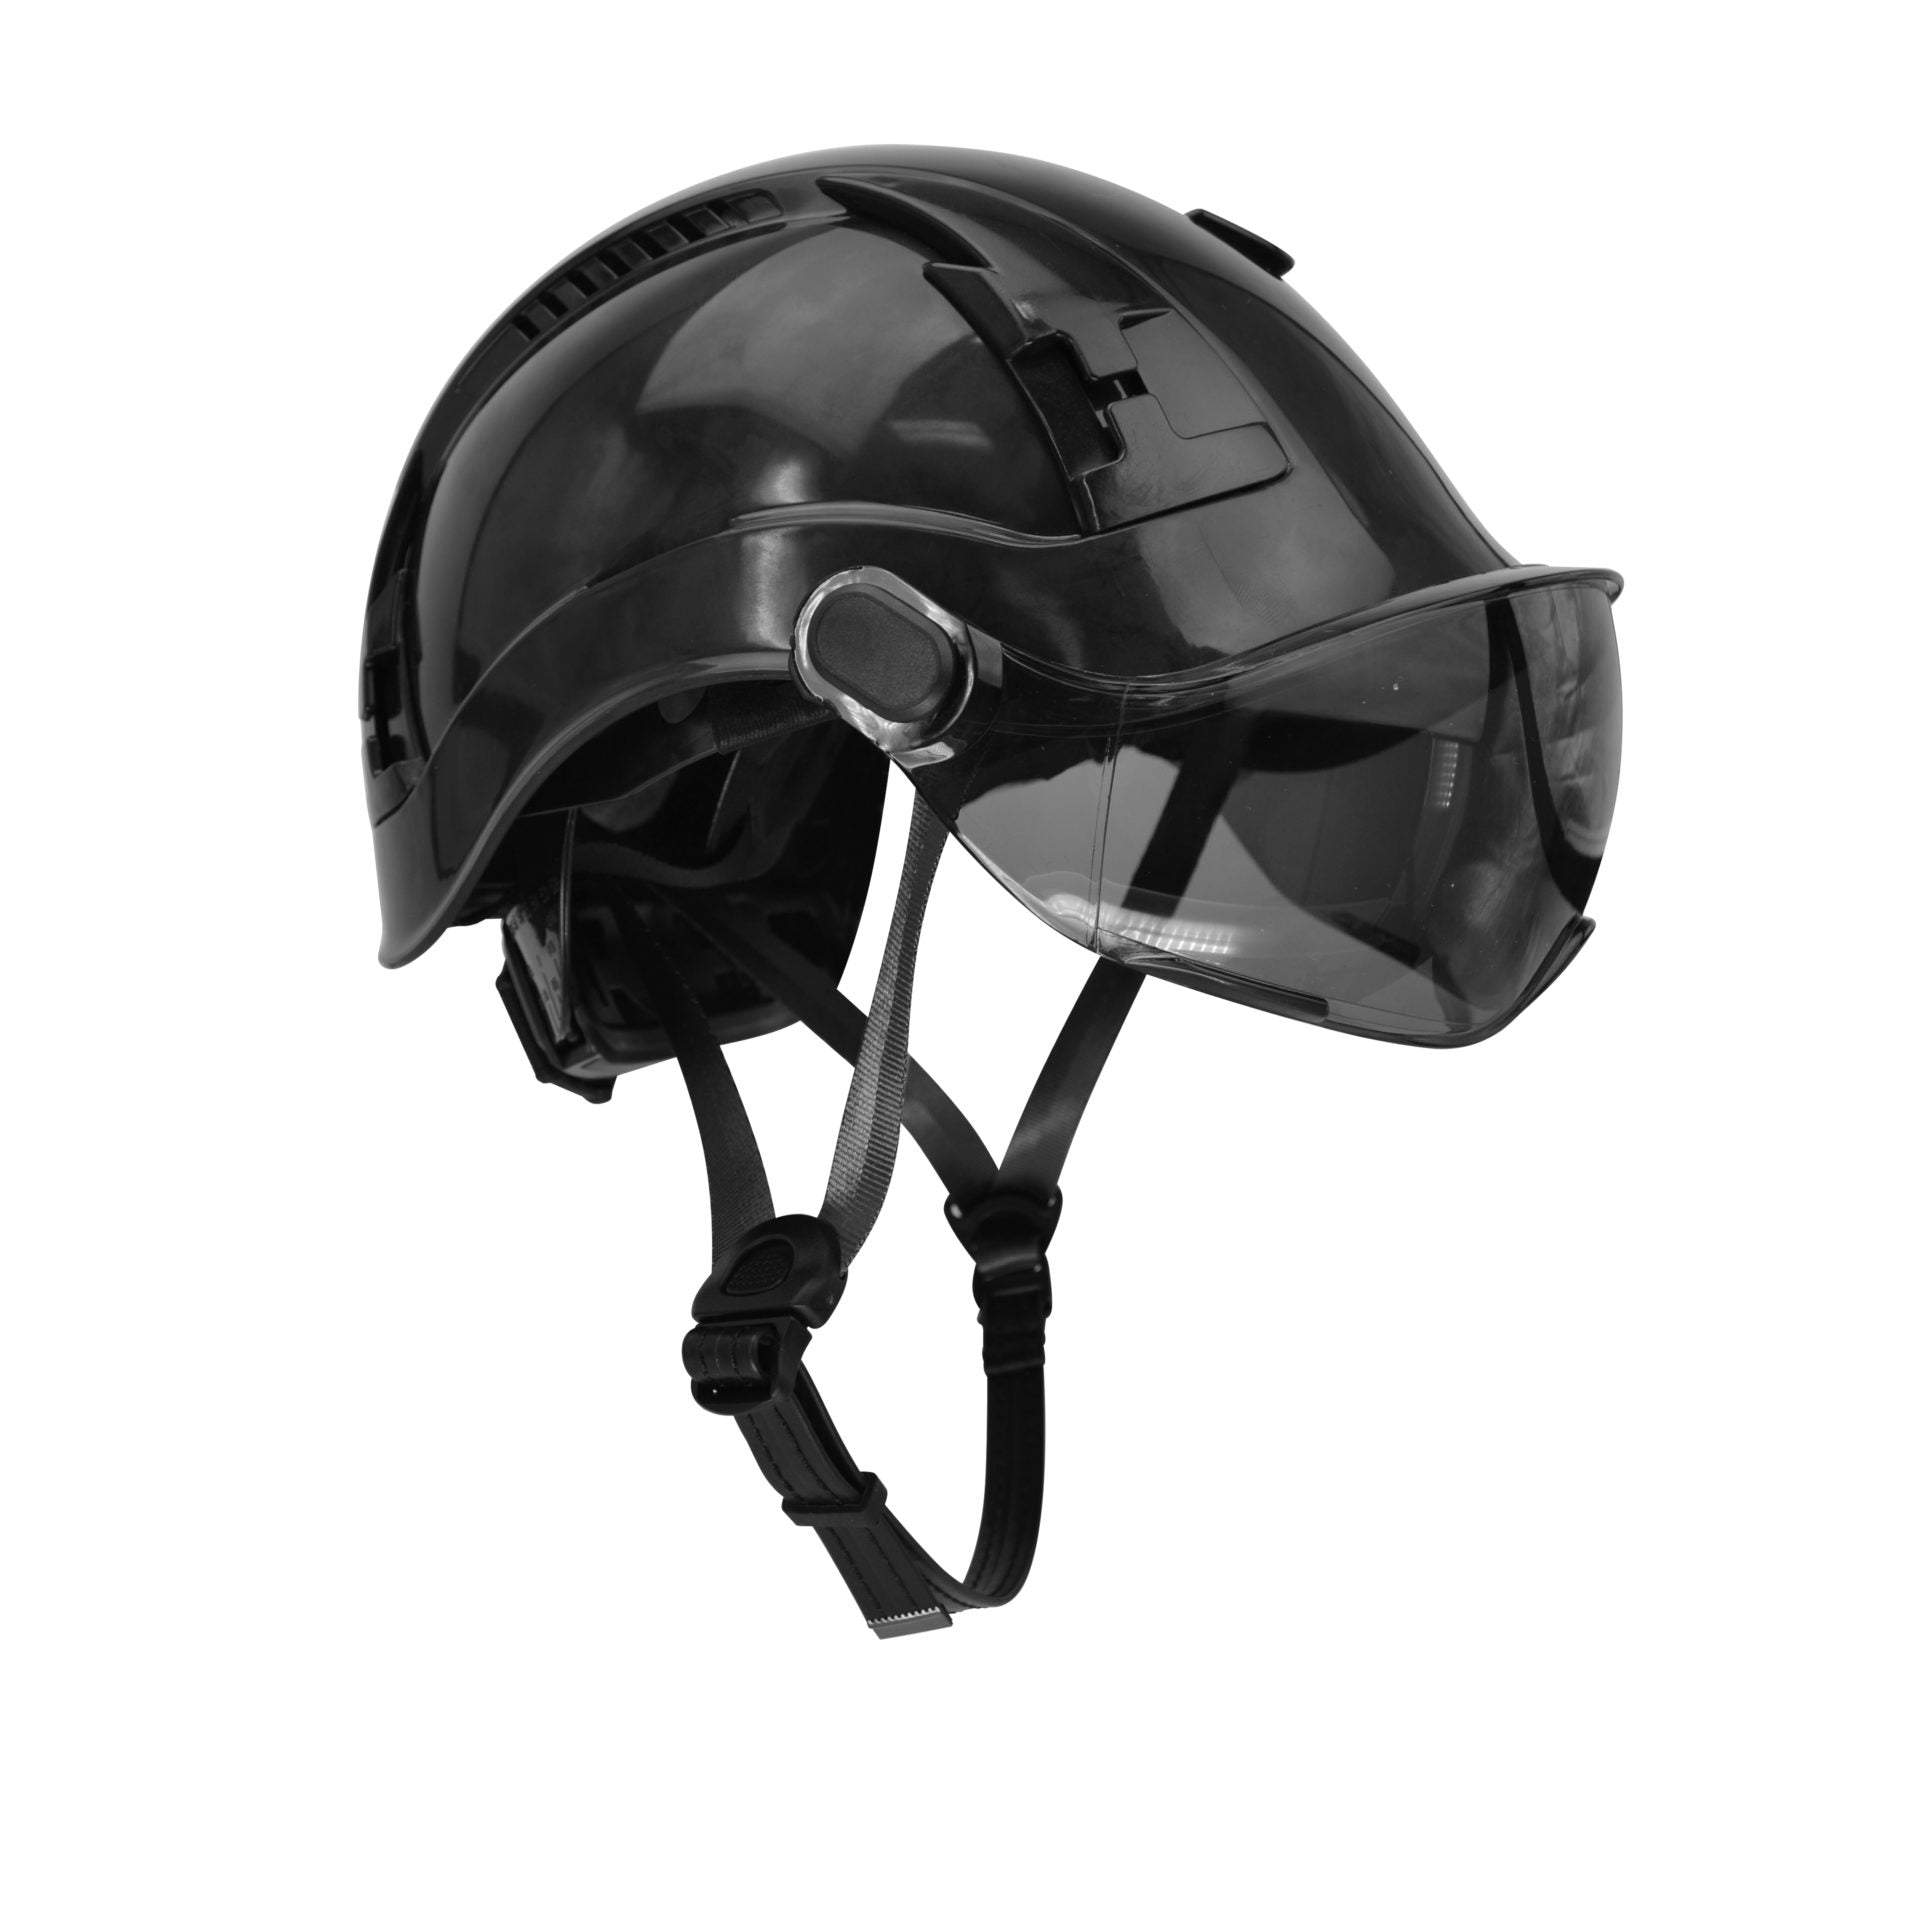 Malta Dynamics Apex Type 2 Safety Helmet (each)